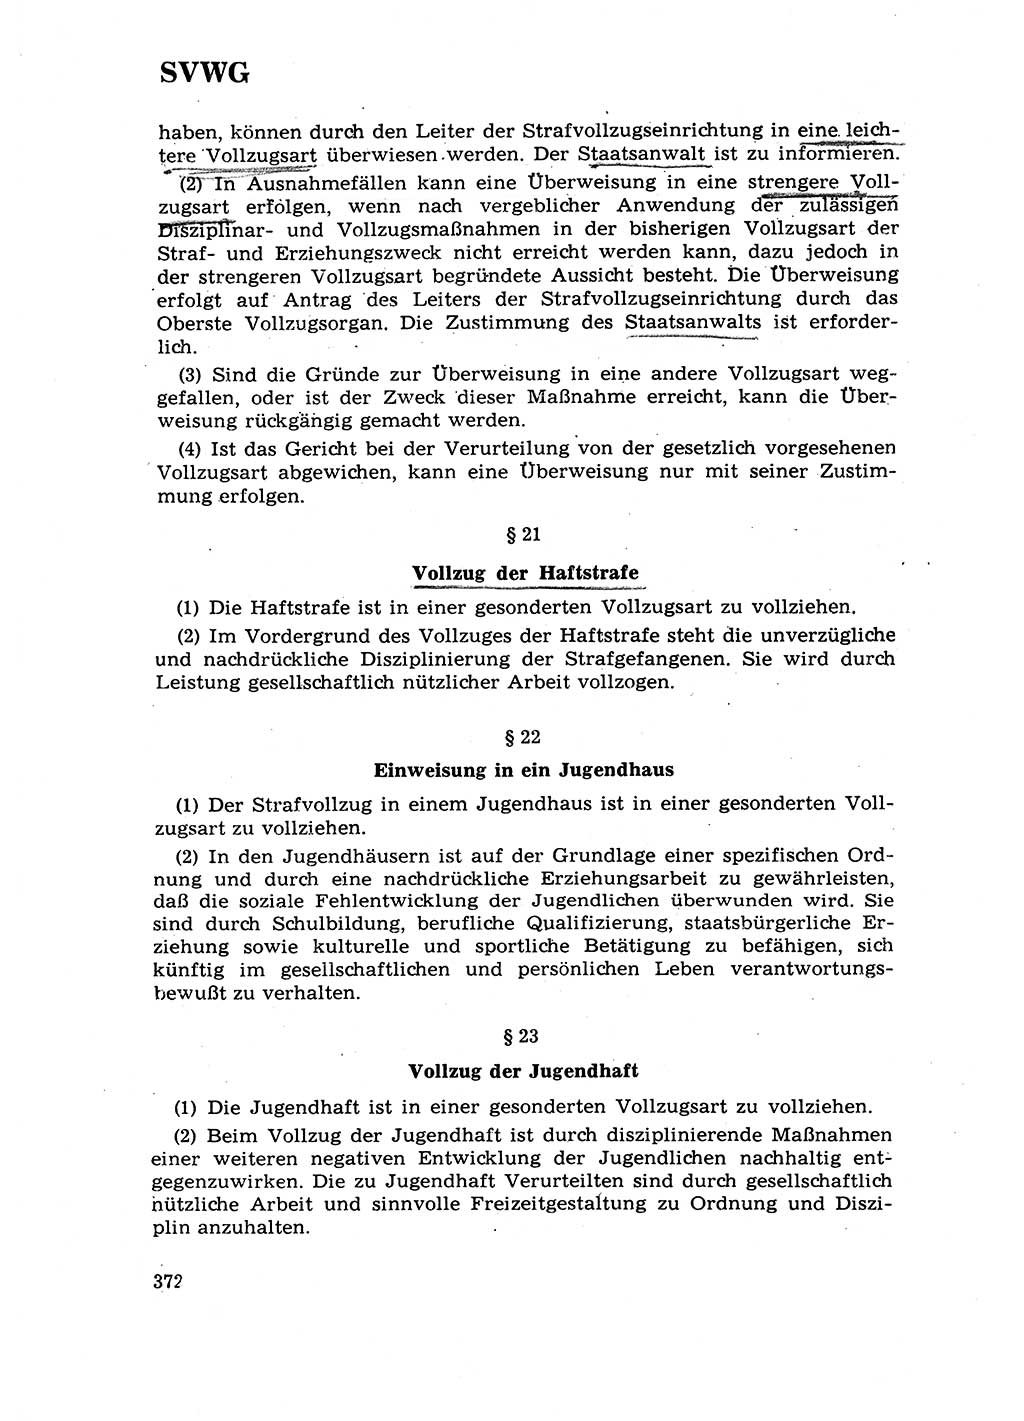 Strafrecht [Deutsche Demokratische Republik (DDR)] 1968, Seite 372 (Strafr. DDR 1968, S. 372)